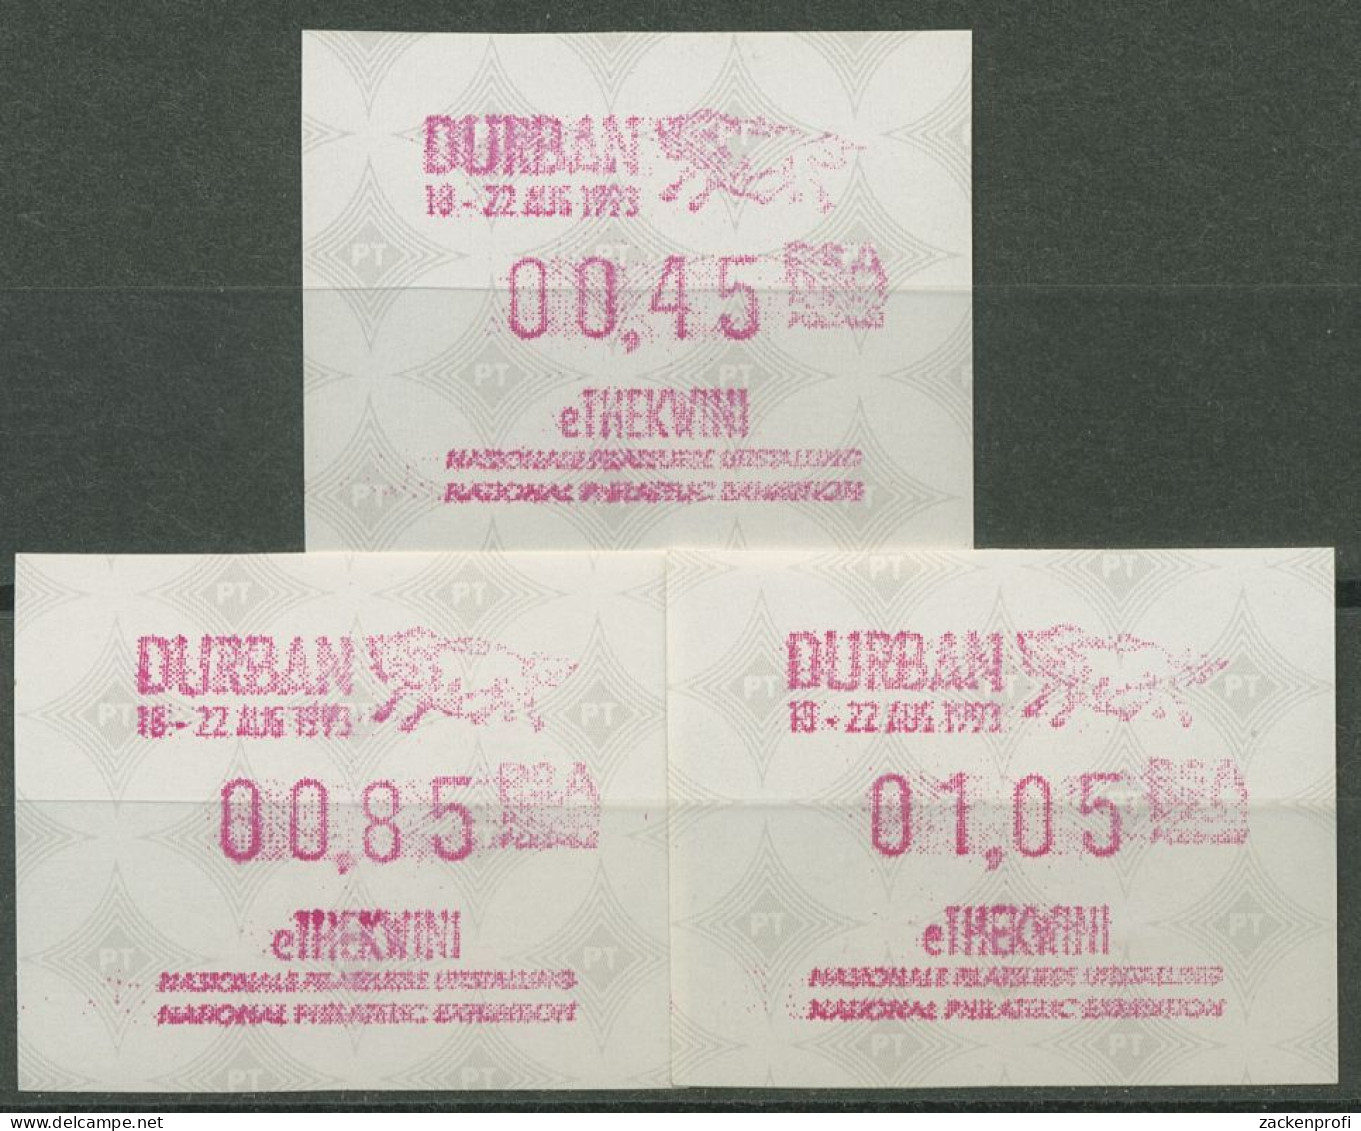 Südafrika ATM 1993 Austellung DURBAN, Satz 3 Werte ATM 12.2 S1 Postfrisch - Viñetas De Franqueo (Frama)